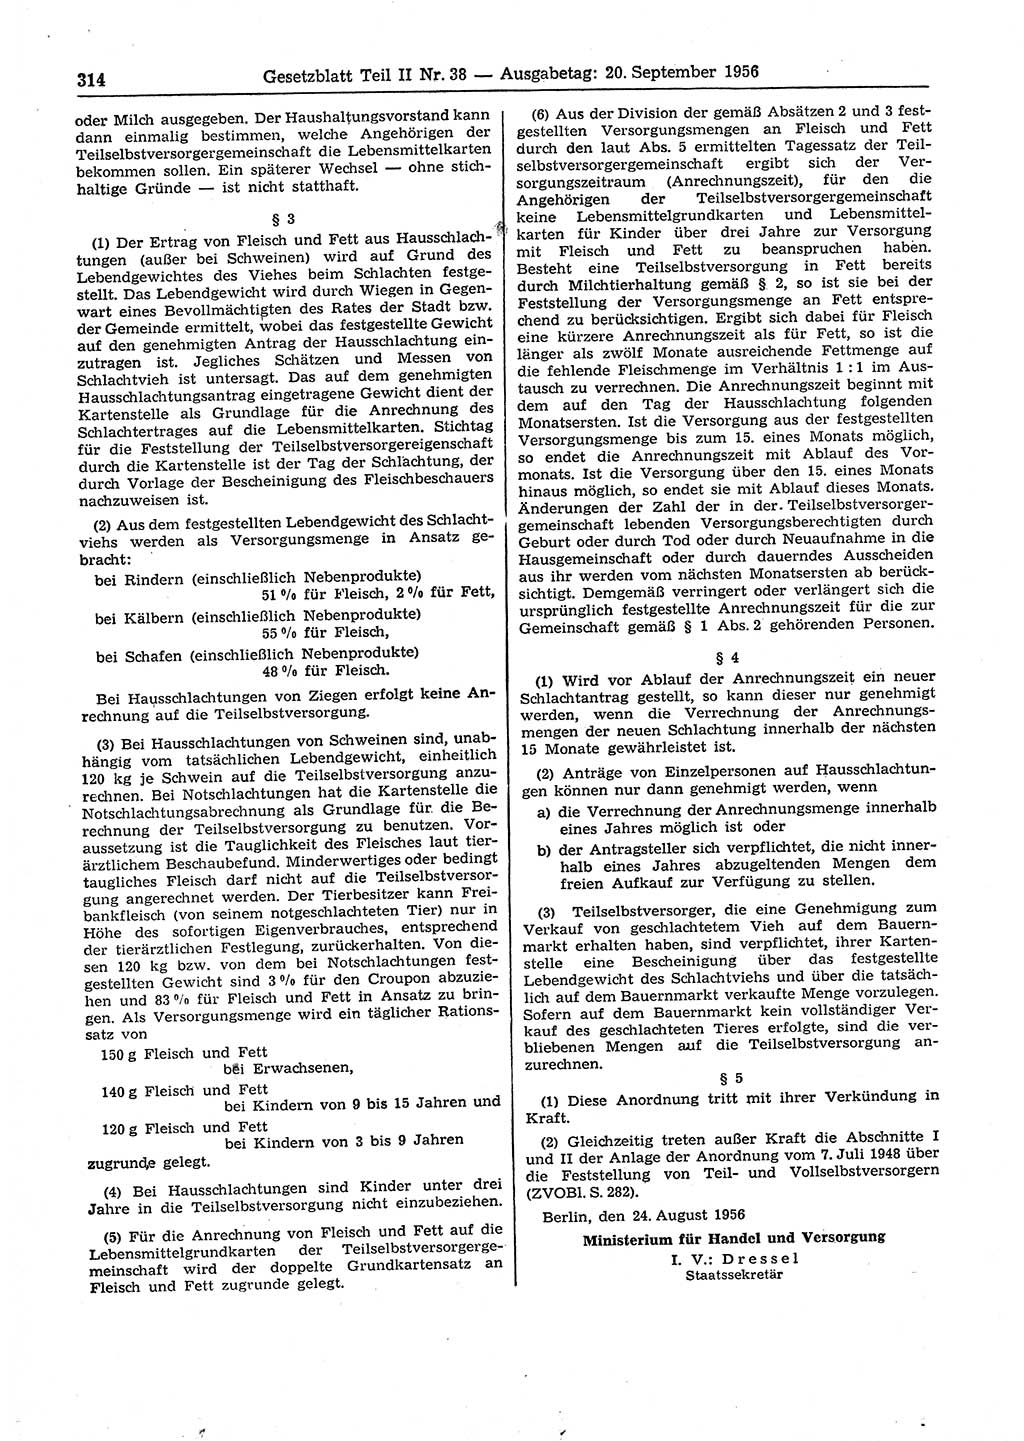 Gesetzblatt (GBl.) der Deutschen Demokratischen Republik (DDR) Teil ⅠⅠ 1956, Seite 314 (GBl. DDR ⅠⅠ 1956, S. 314)